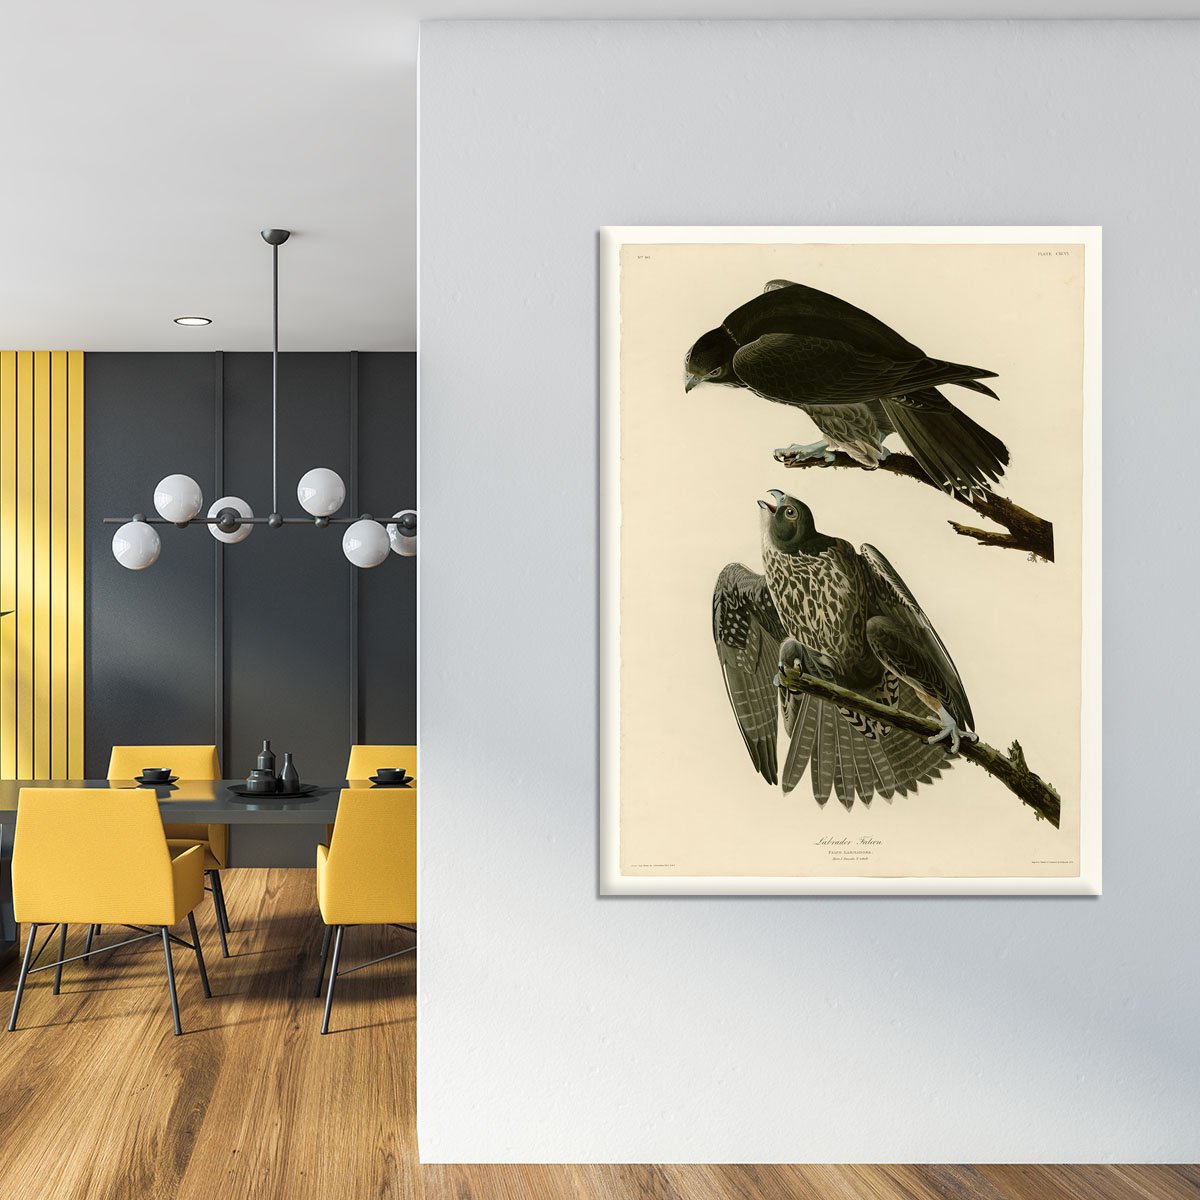 Labrador Falcon by Audubon Canvas Print or Poster